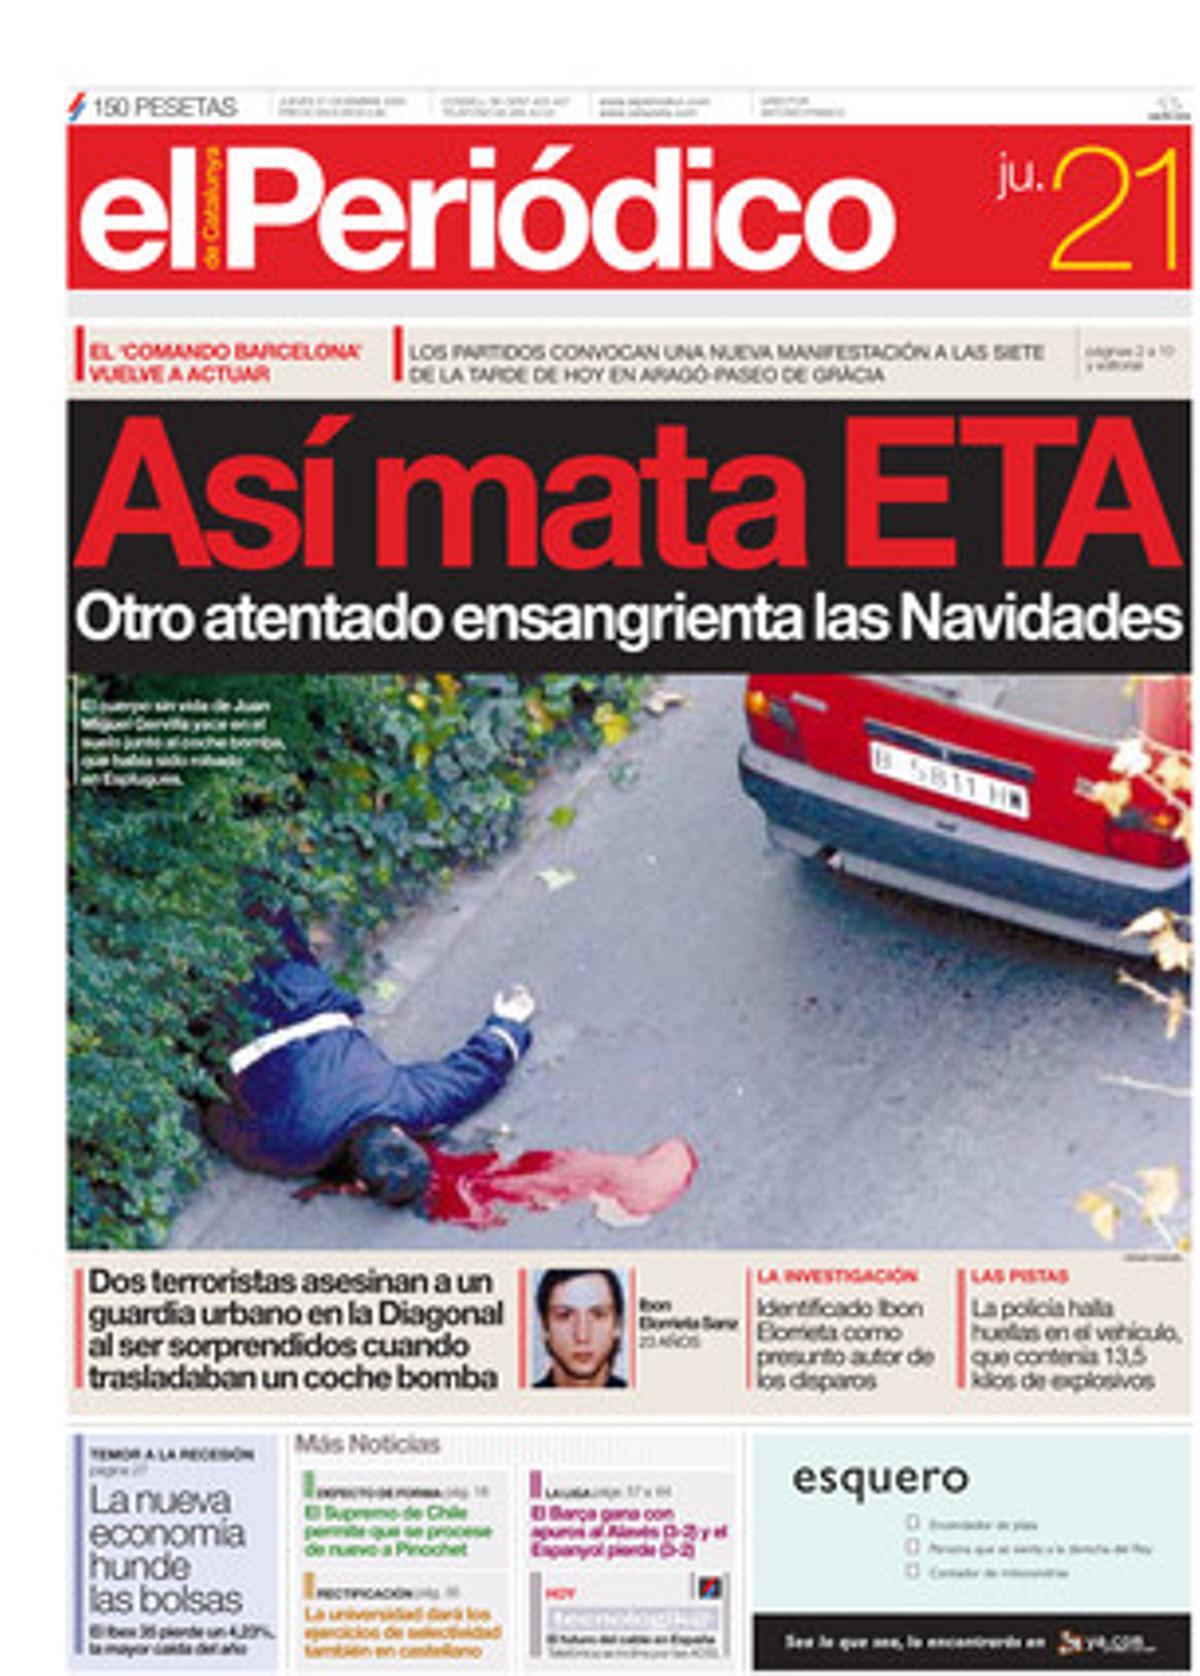 Dos etarras asesinan a un guardia urbano en la Diagonal al ser sorpendidos cuando trasladaban un coche bomba. 21/12/2000